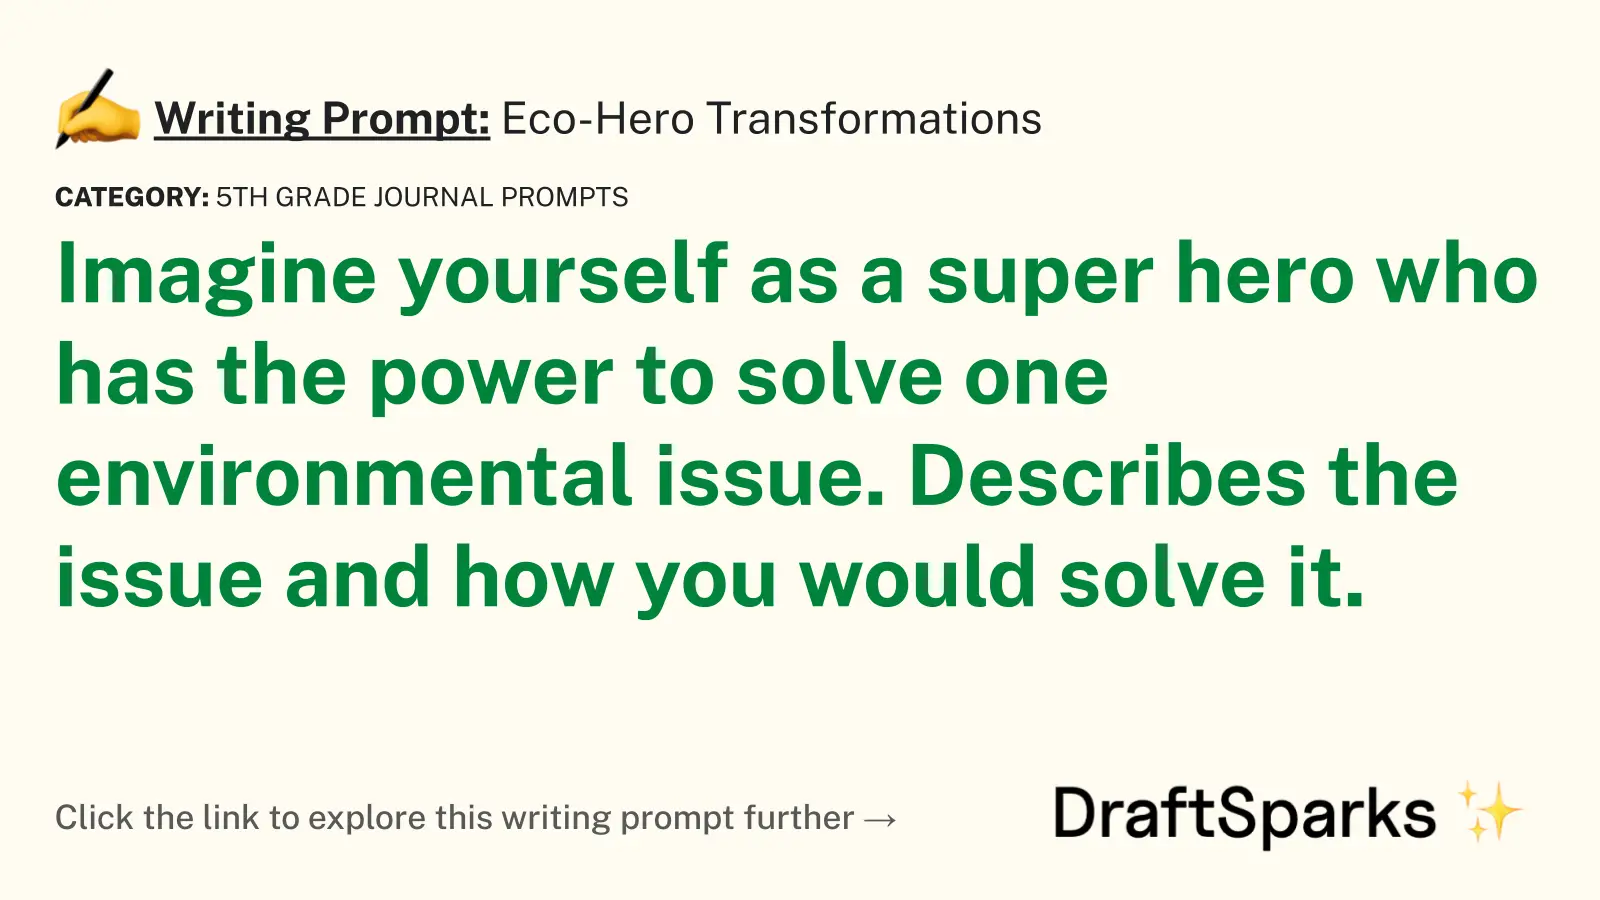 Eco-Hero Transformations